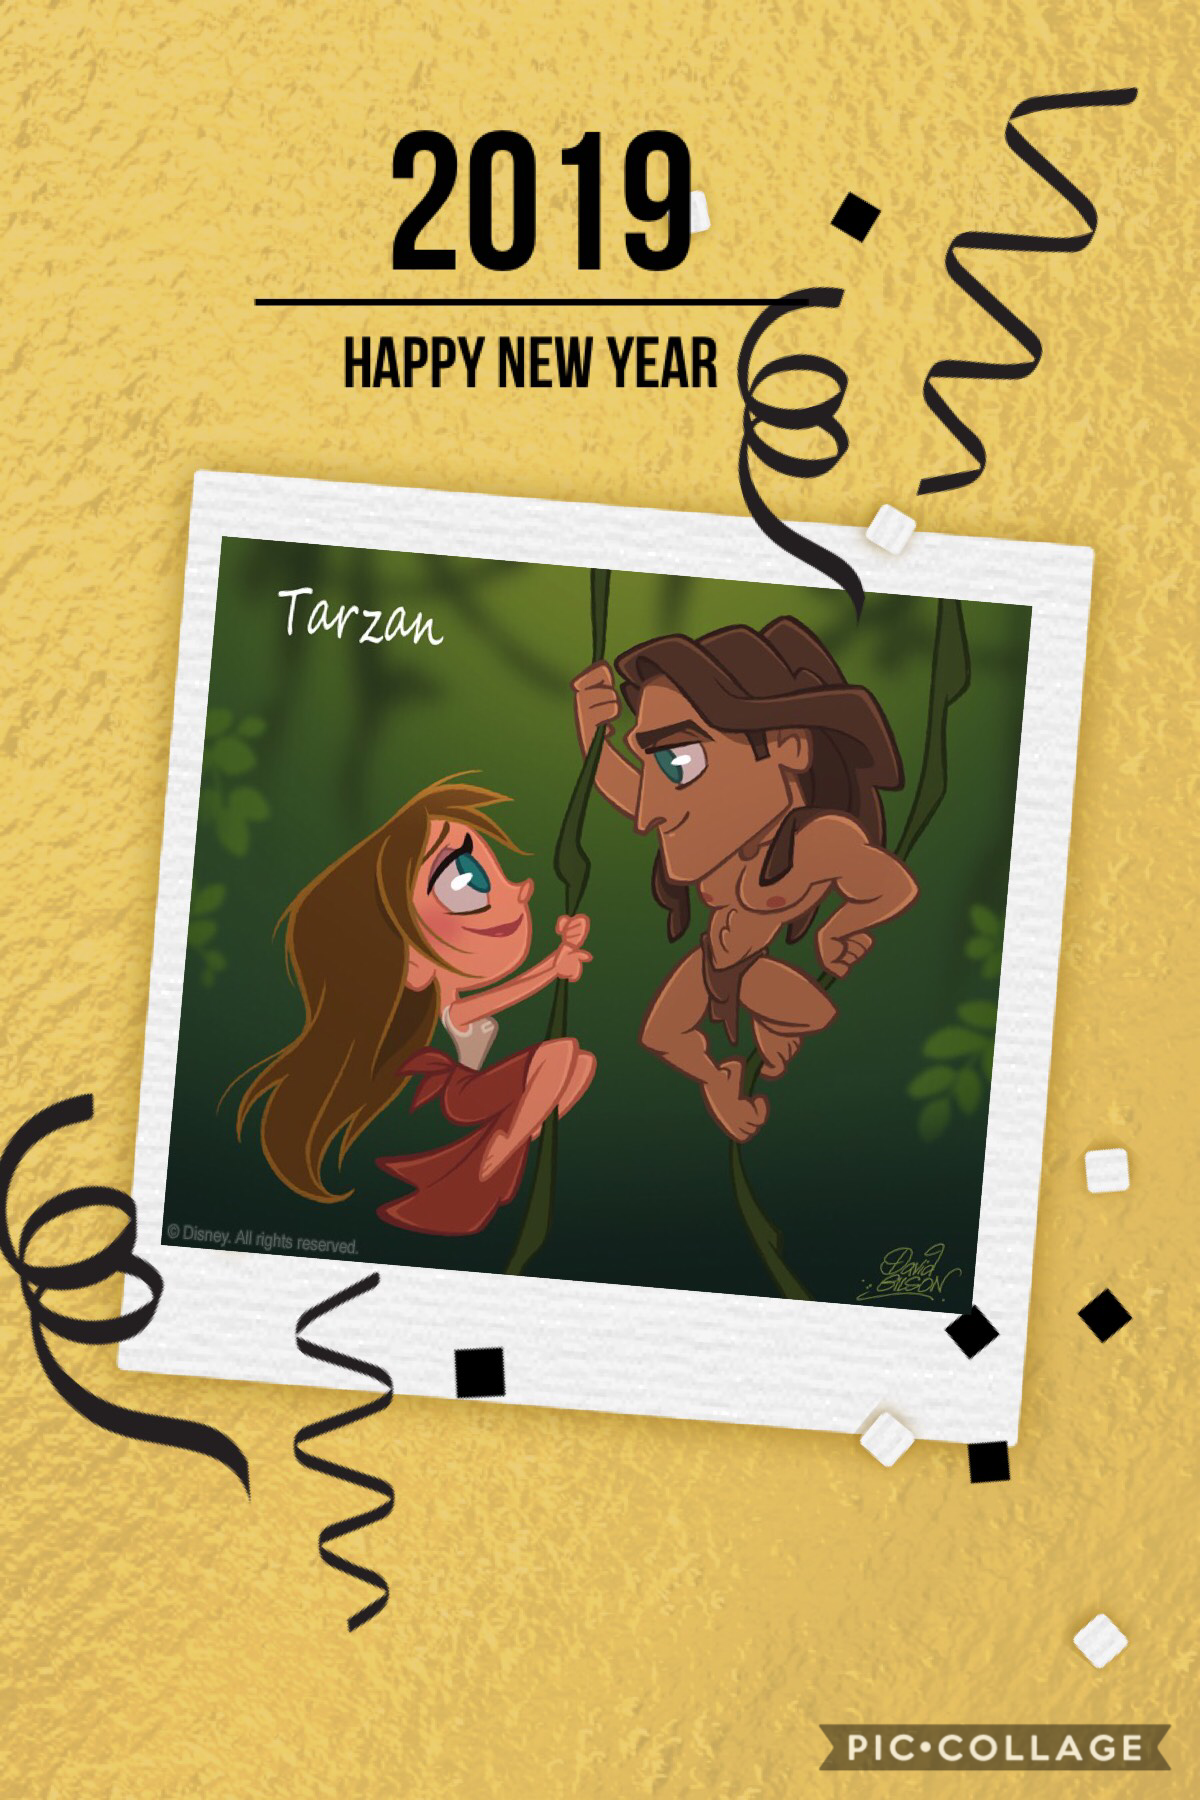 Hey, it’s 20 years of Disney Tarzan 